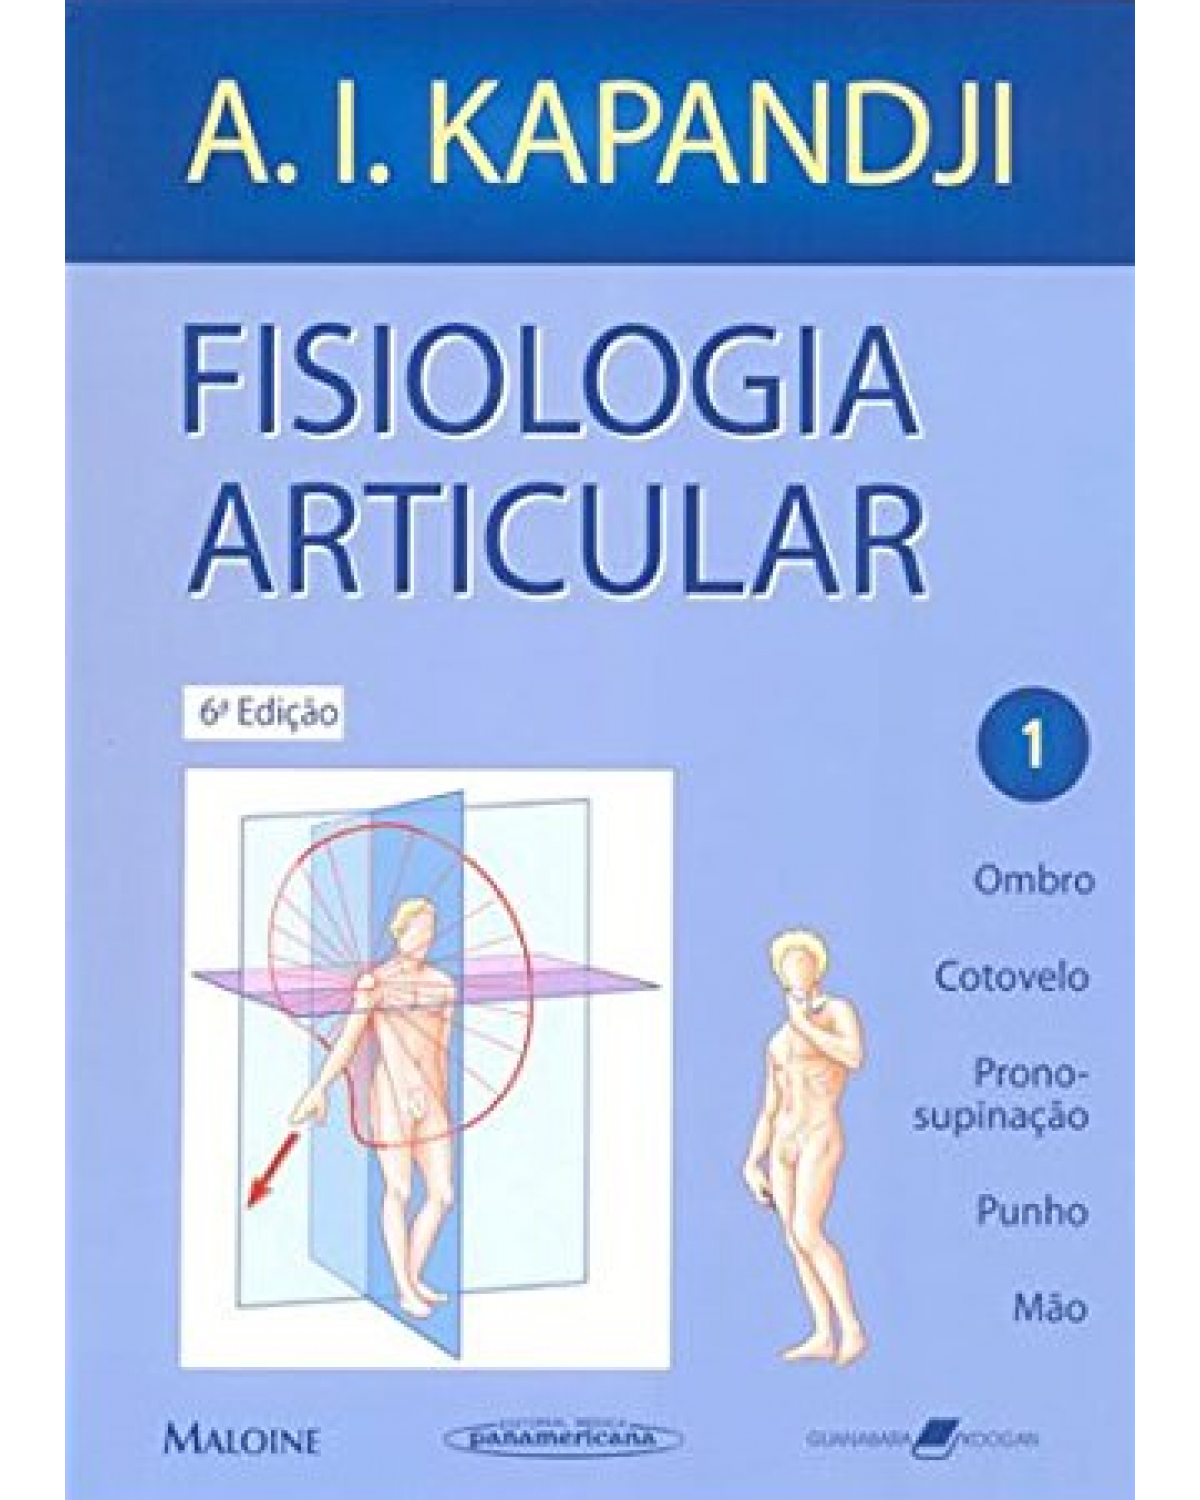 Fisiologia articular - Volume 1: Ombro, cotovelo, prono-supinação, punho, mão - 6ª Edição | 2007